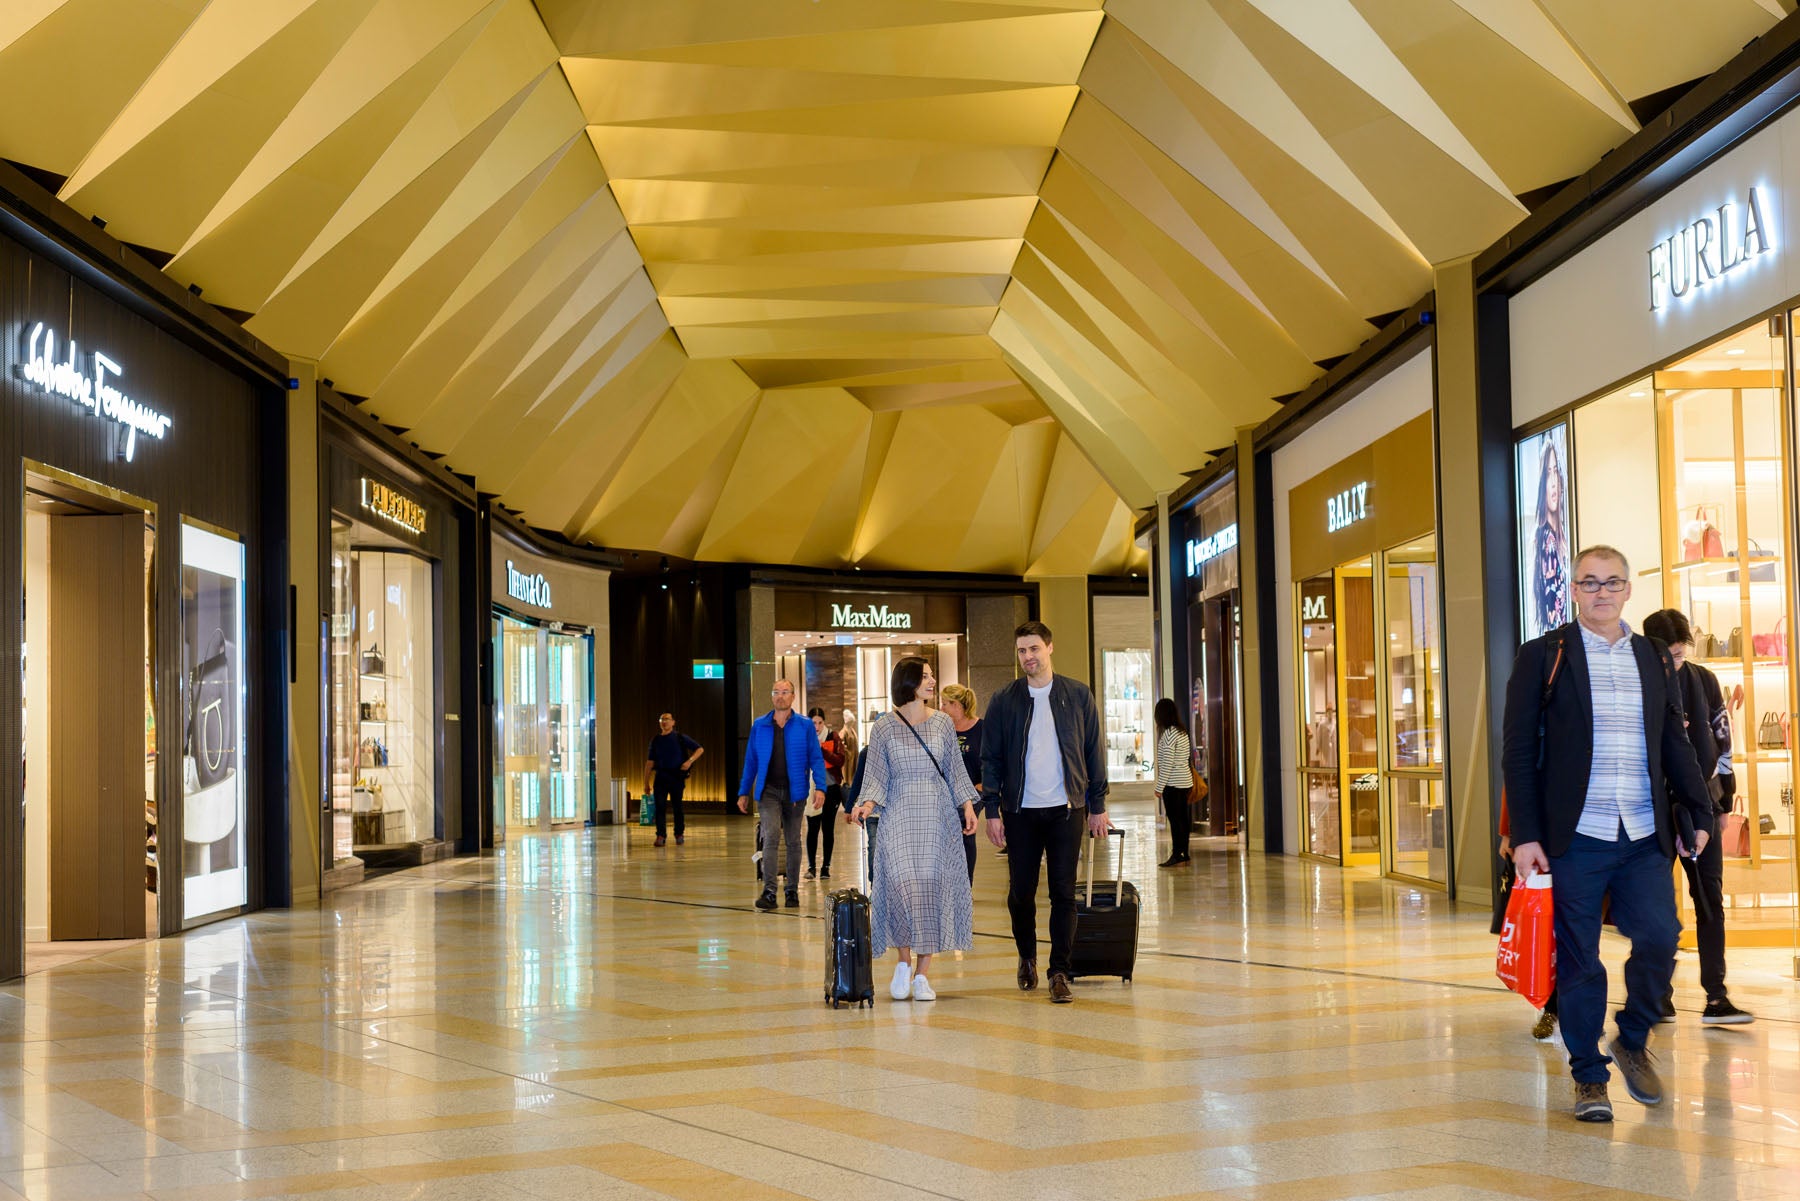 Louis Vuitton Store Melbourne Airport